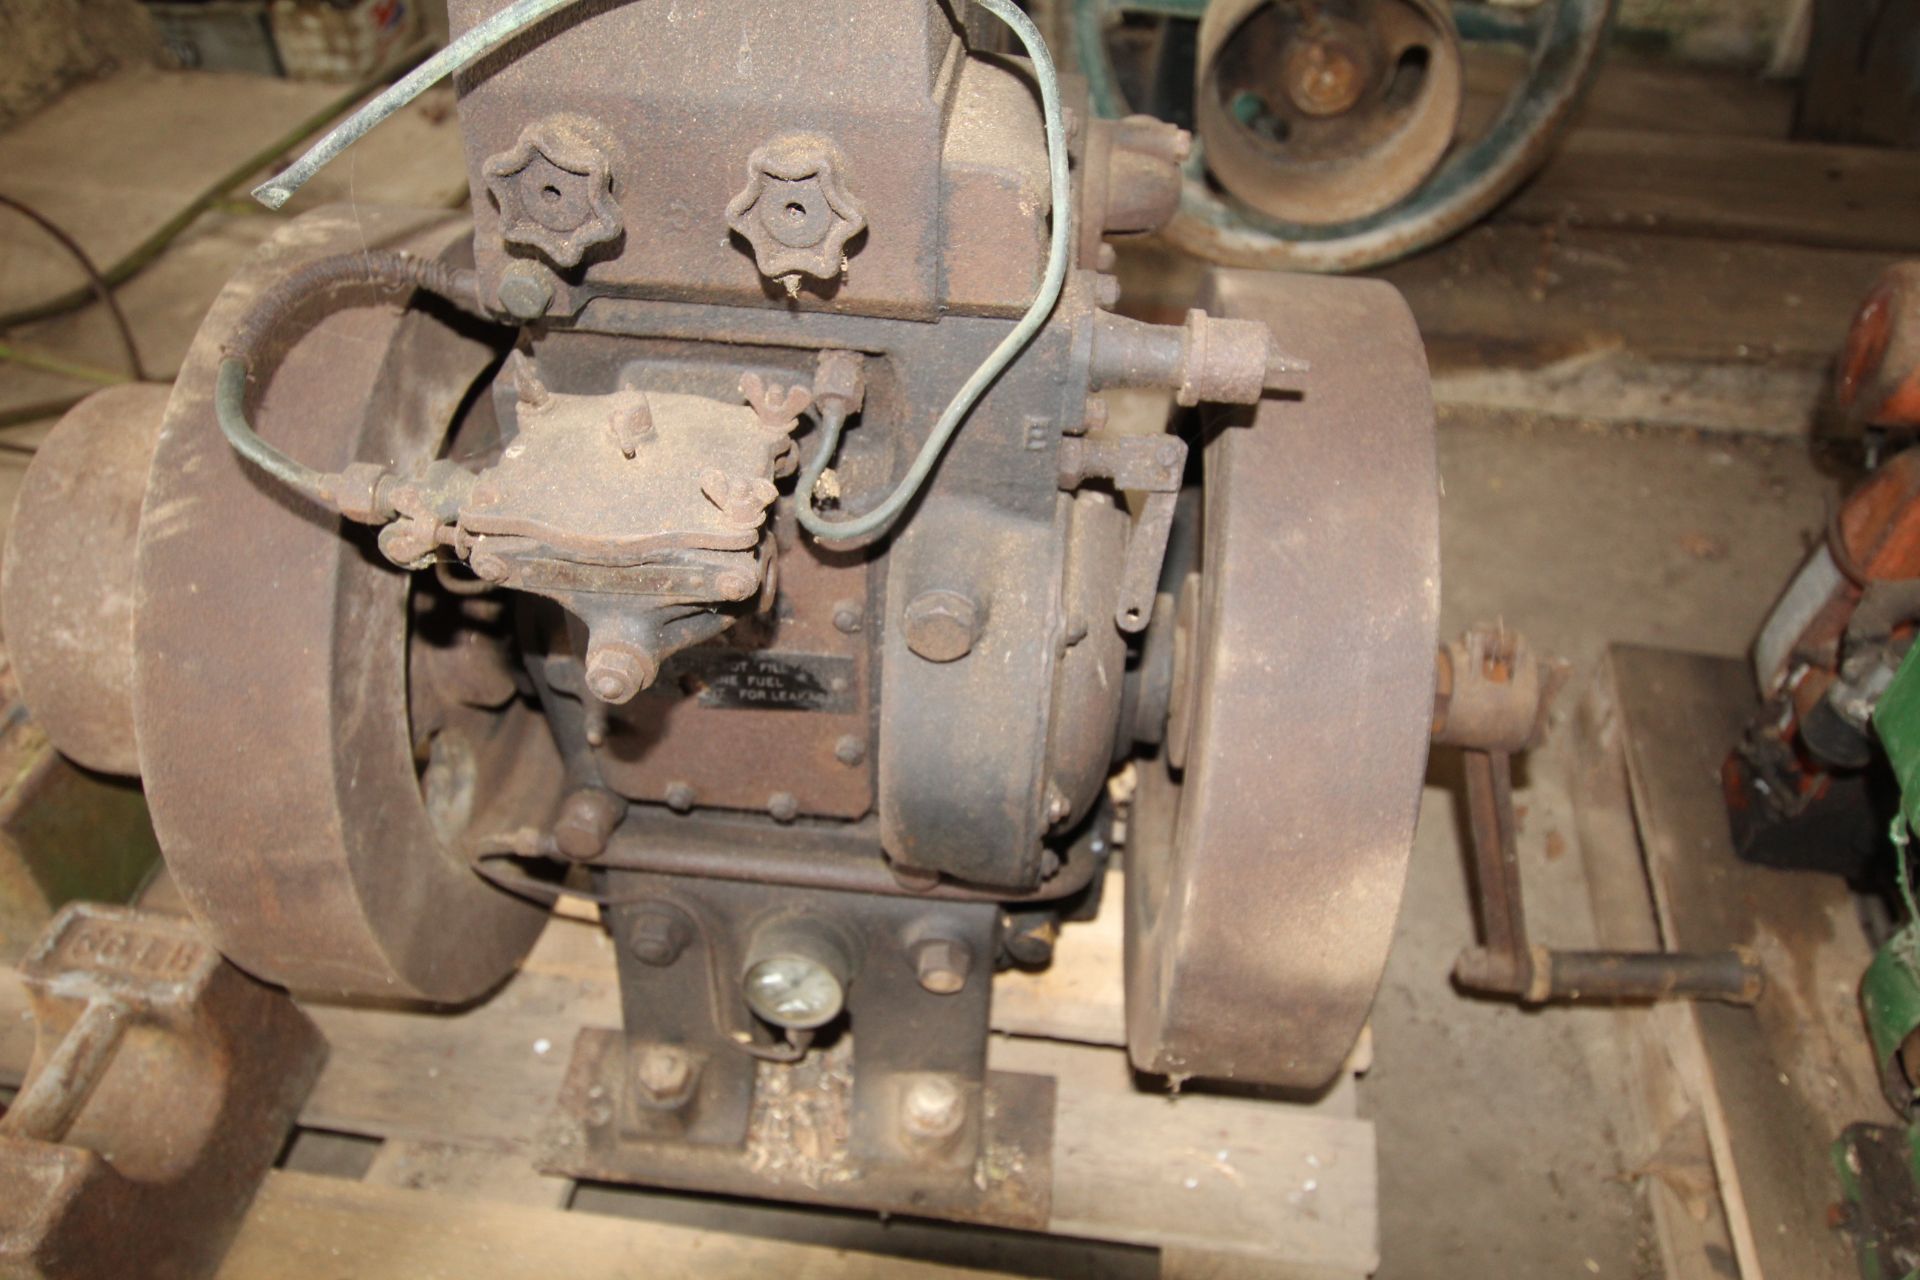 Ruston single cylinder stationary engine. - Image 2 of 6